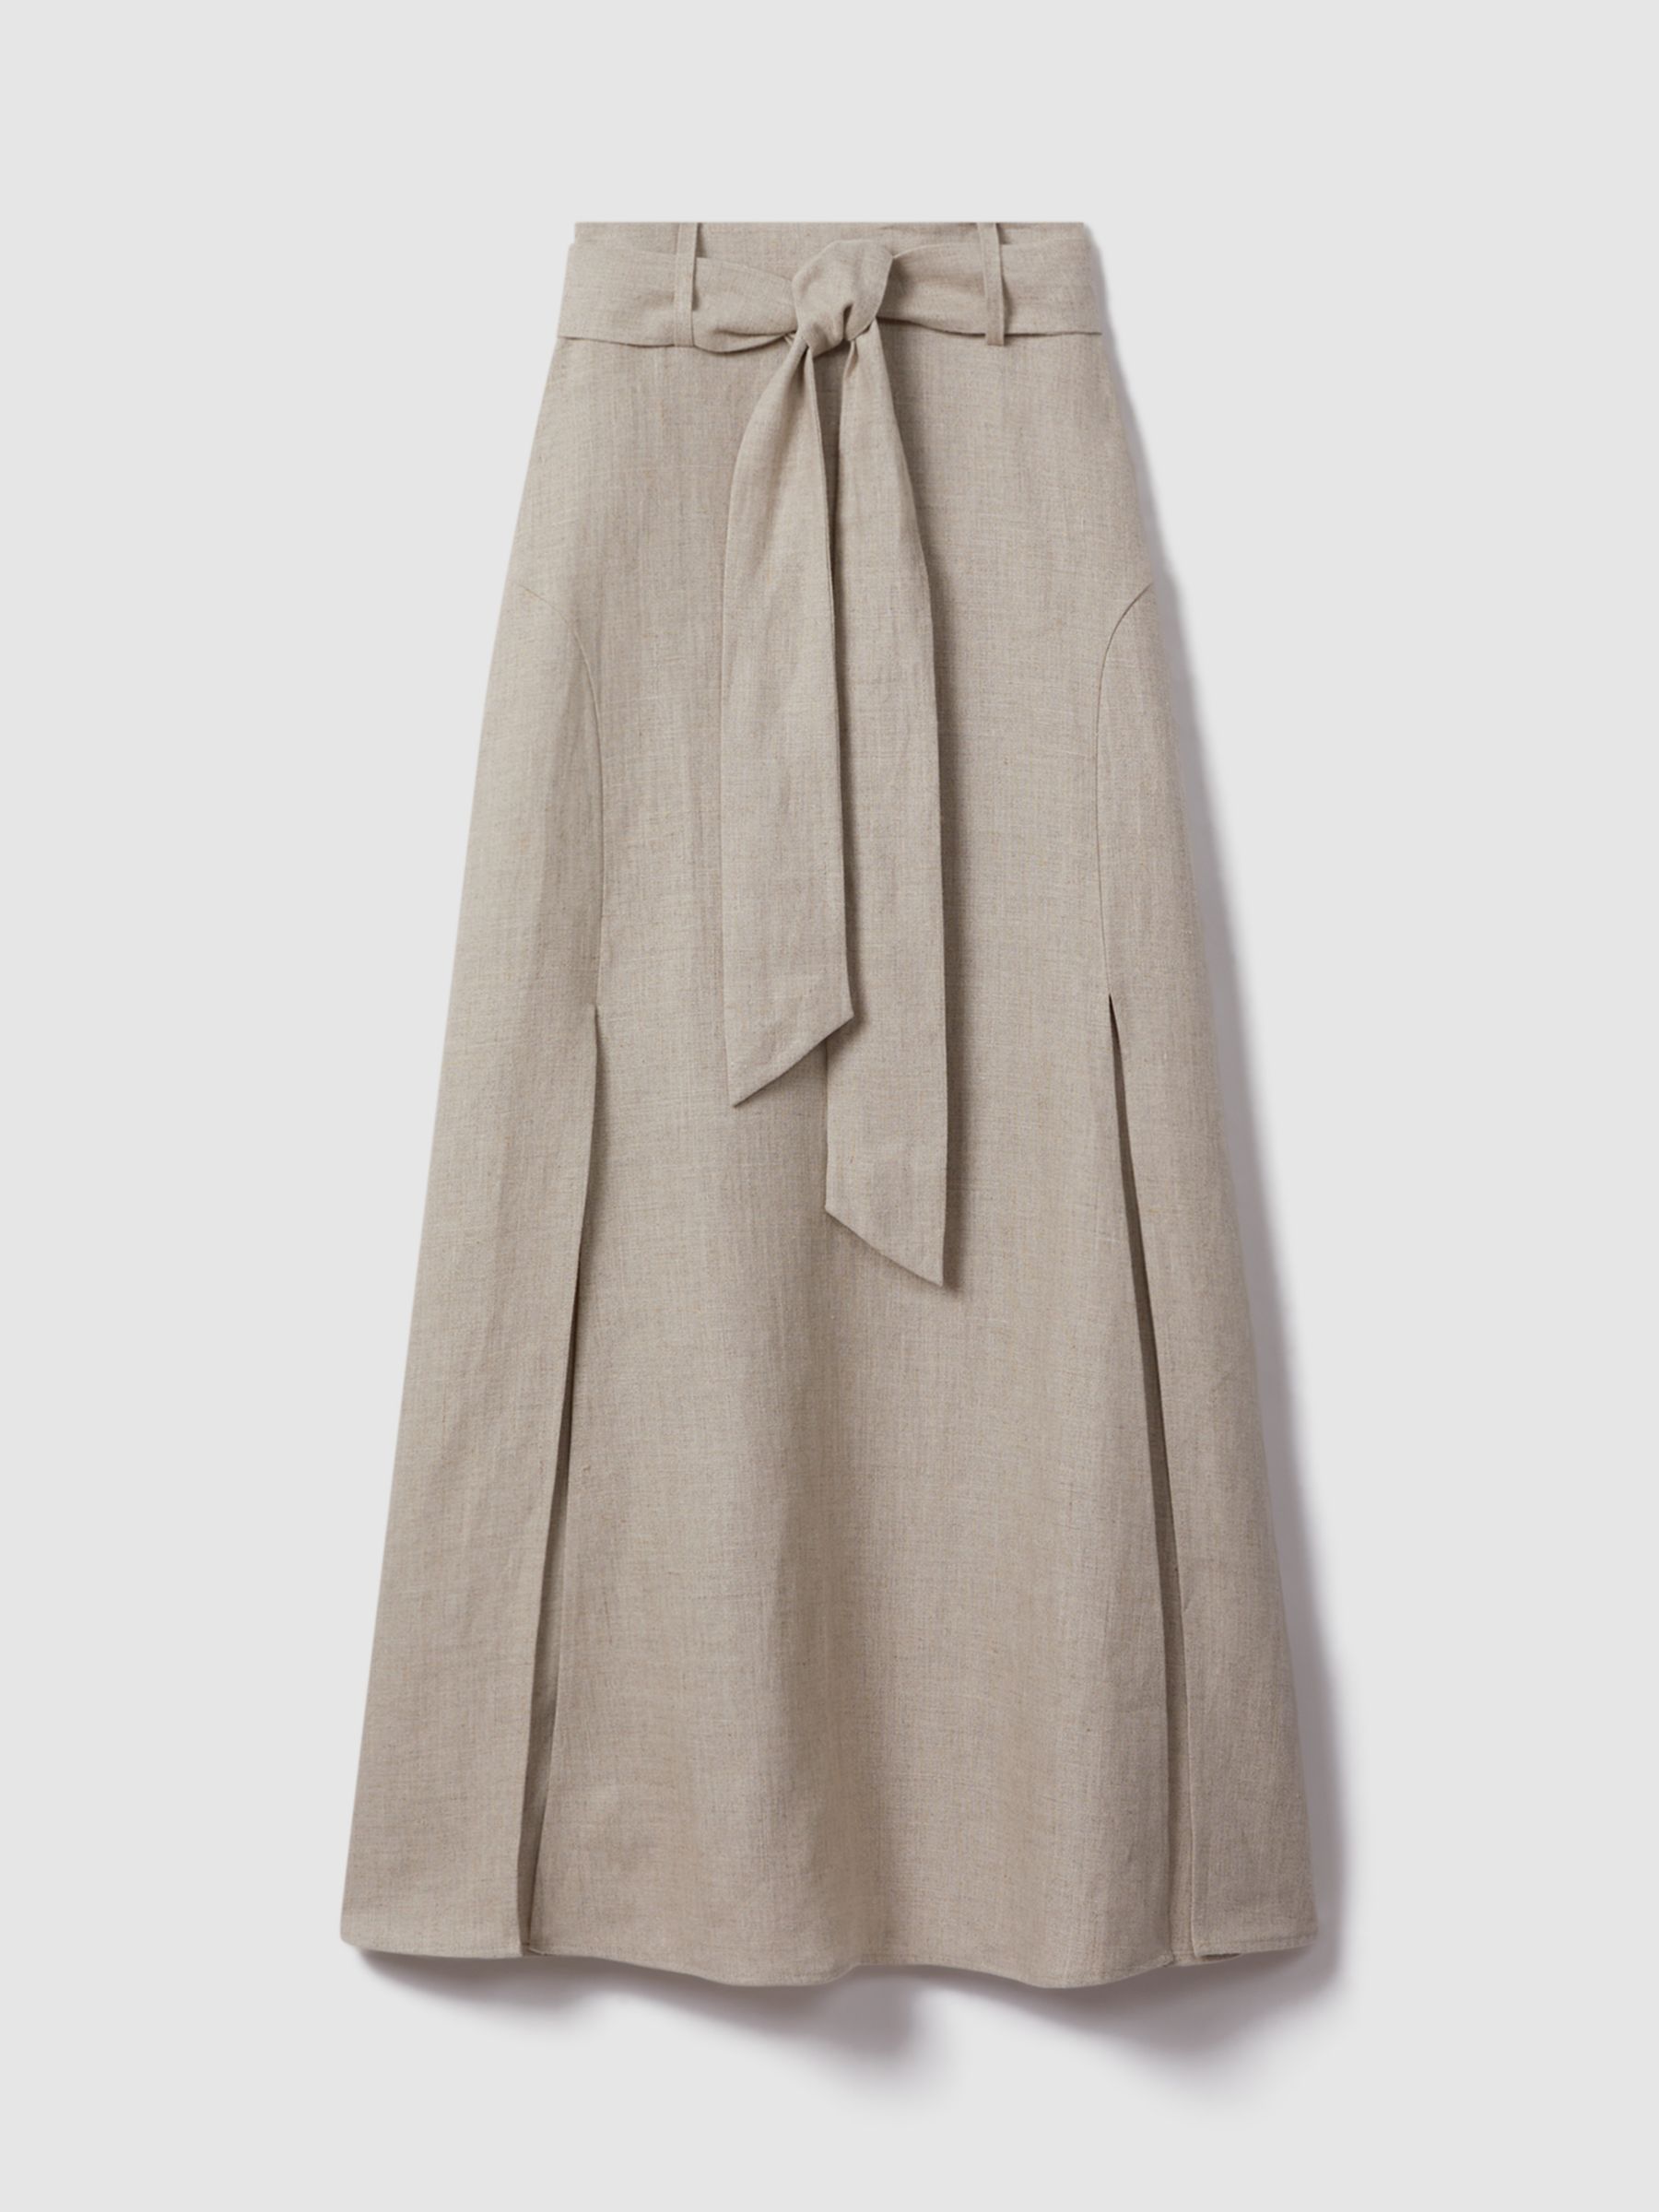 Reiss Abigail Belted Linen Maxi Skirt, Neutral, 6